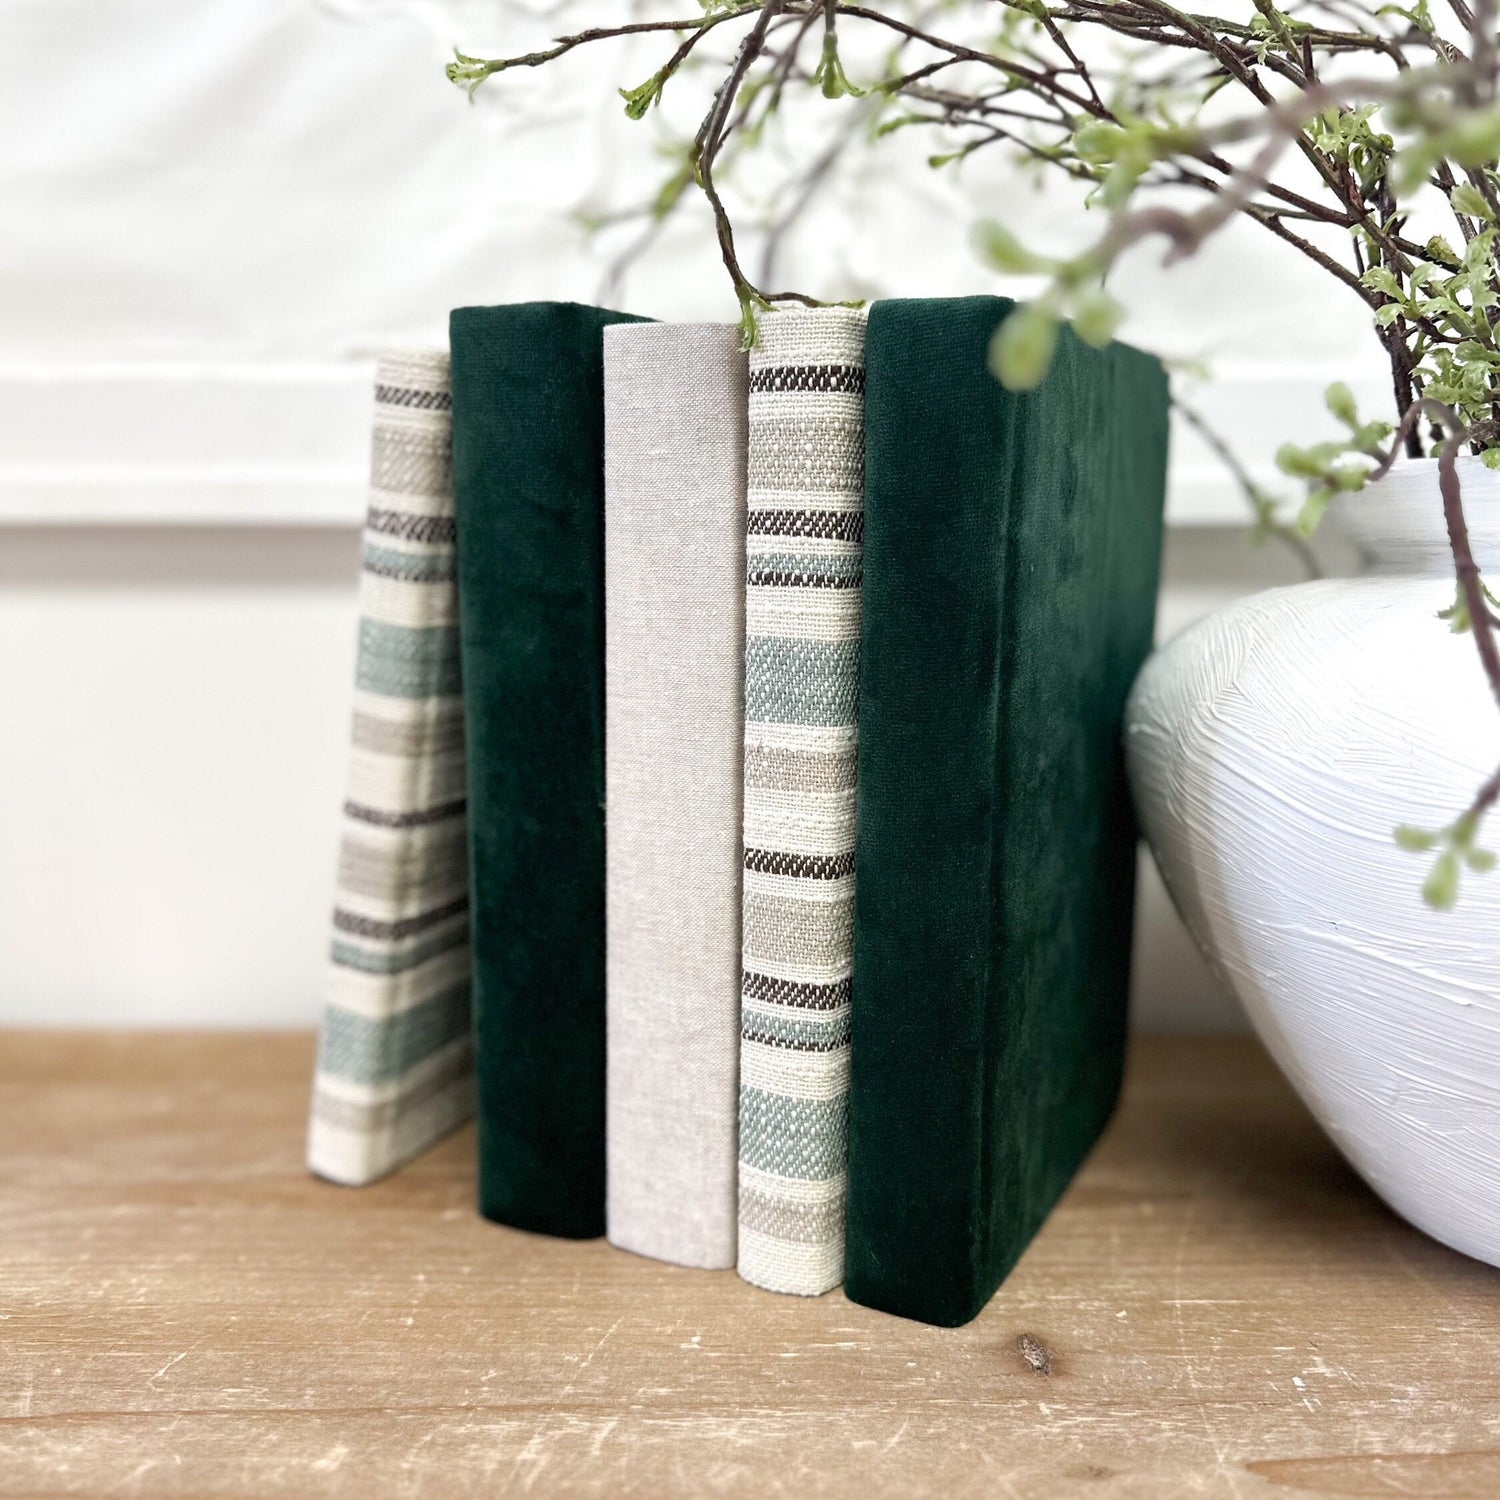 Linen Covered Books, Decorative Books, Green Velvet Designer Books